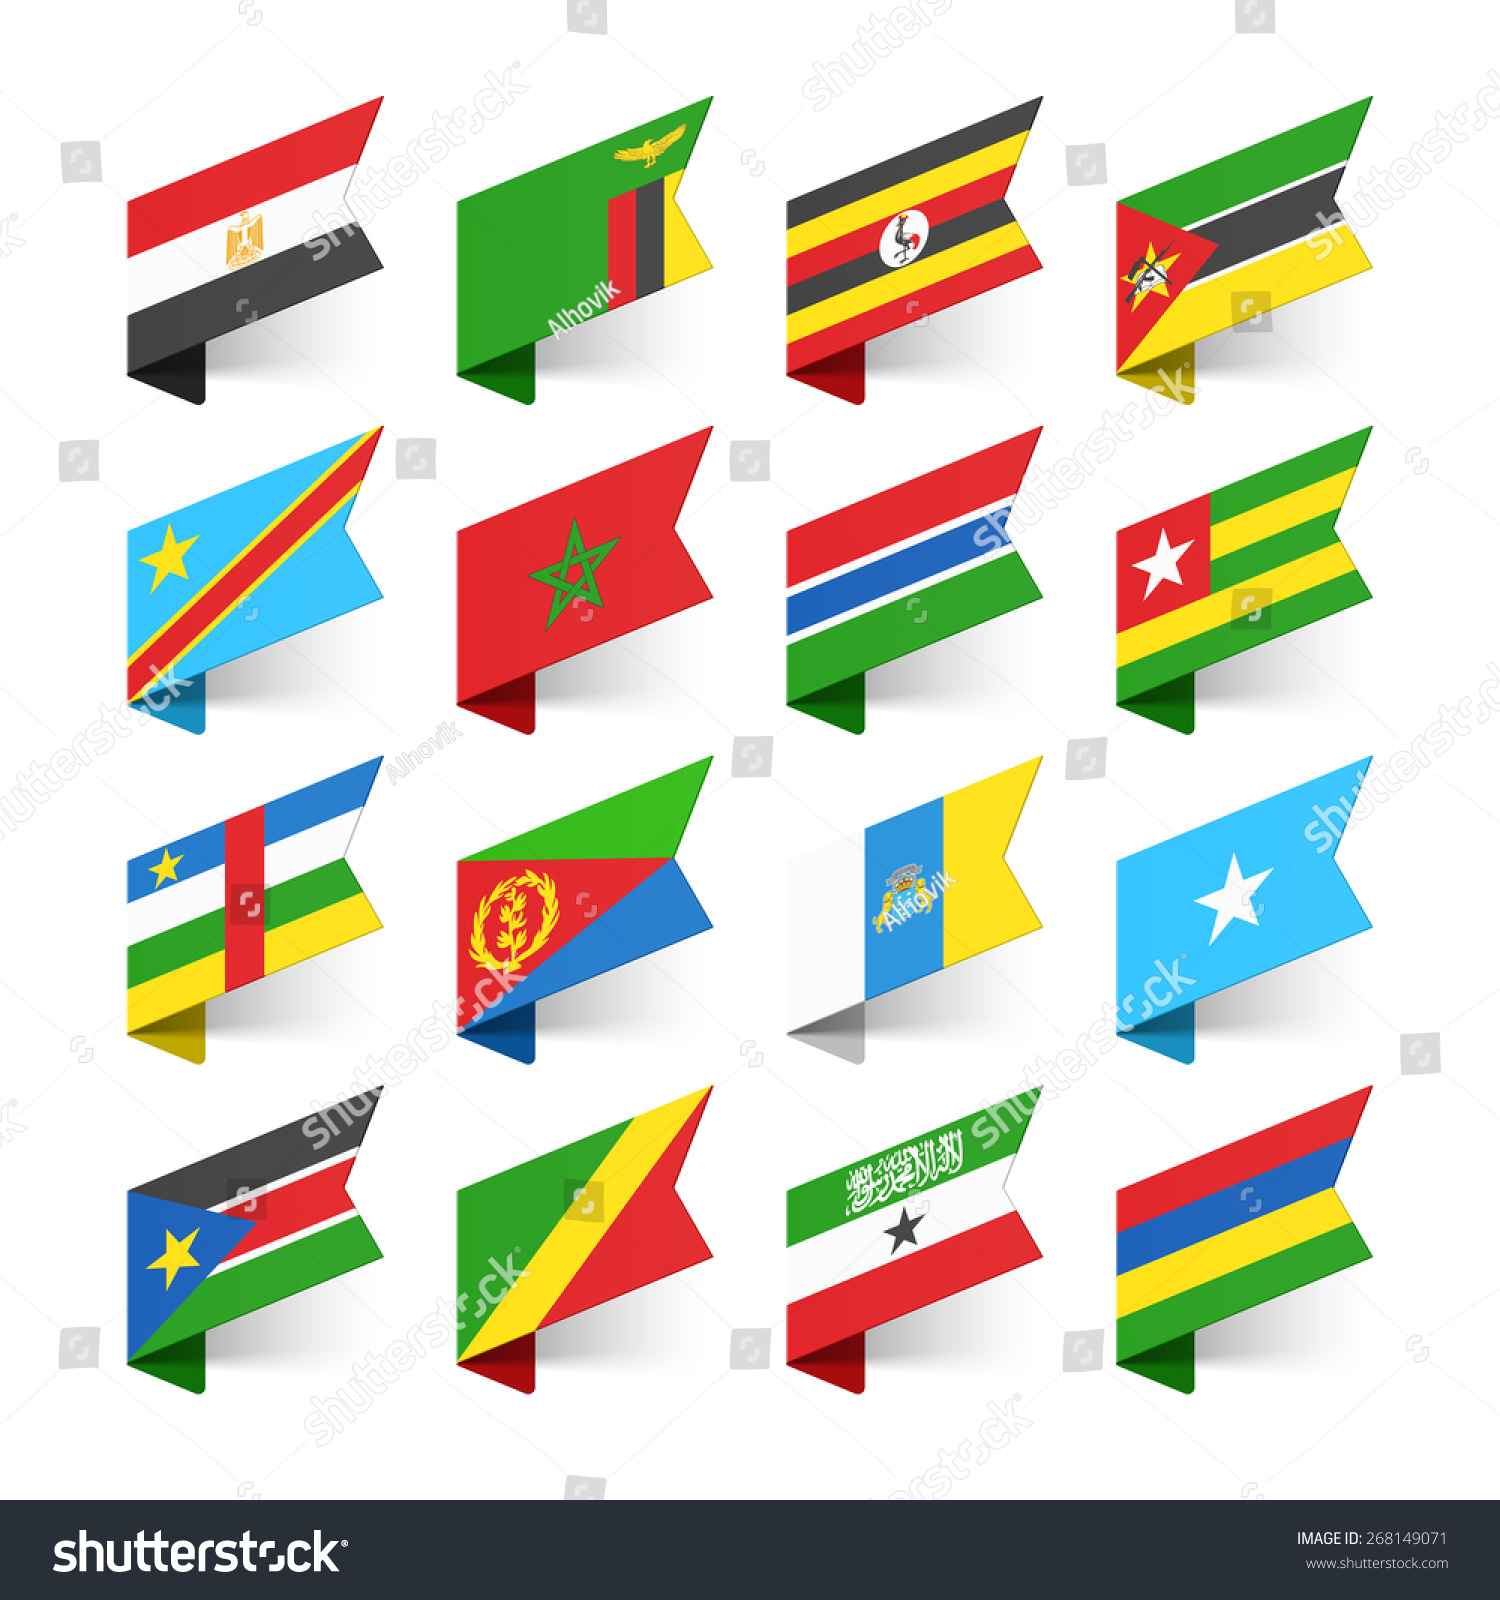 Bandeiras do Mundo África conjunto vetor stock livre de direitos Shutterstock